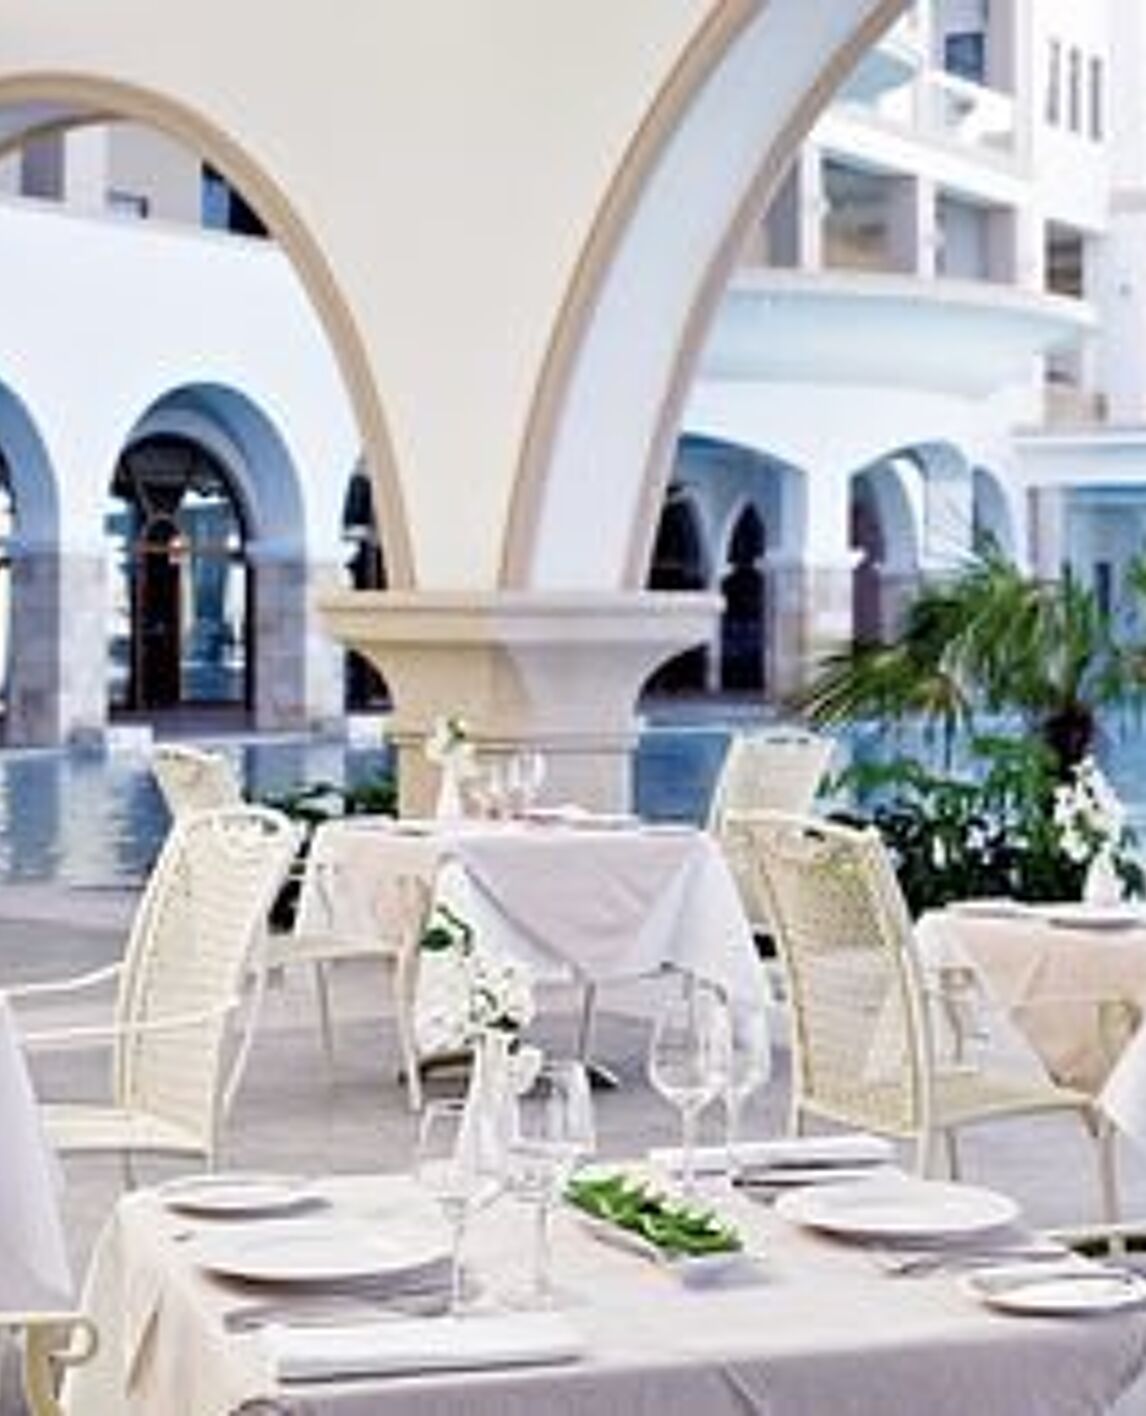 atrium-prestige-thalasso-spa-resort-villas